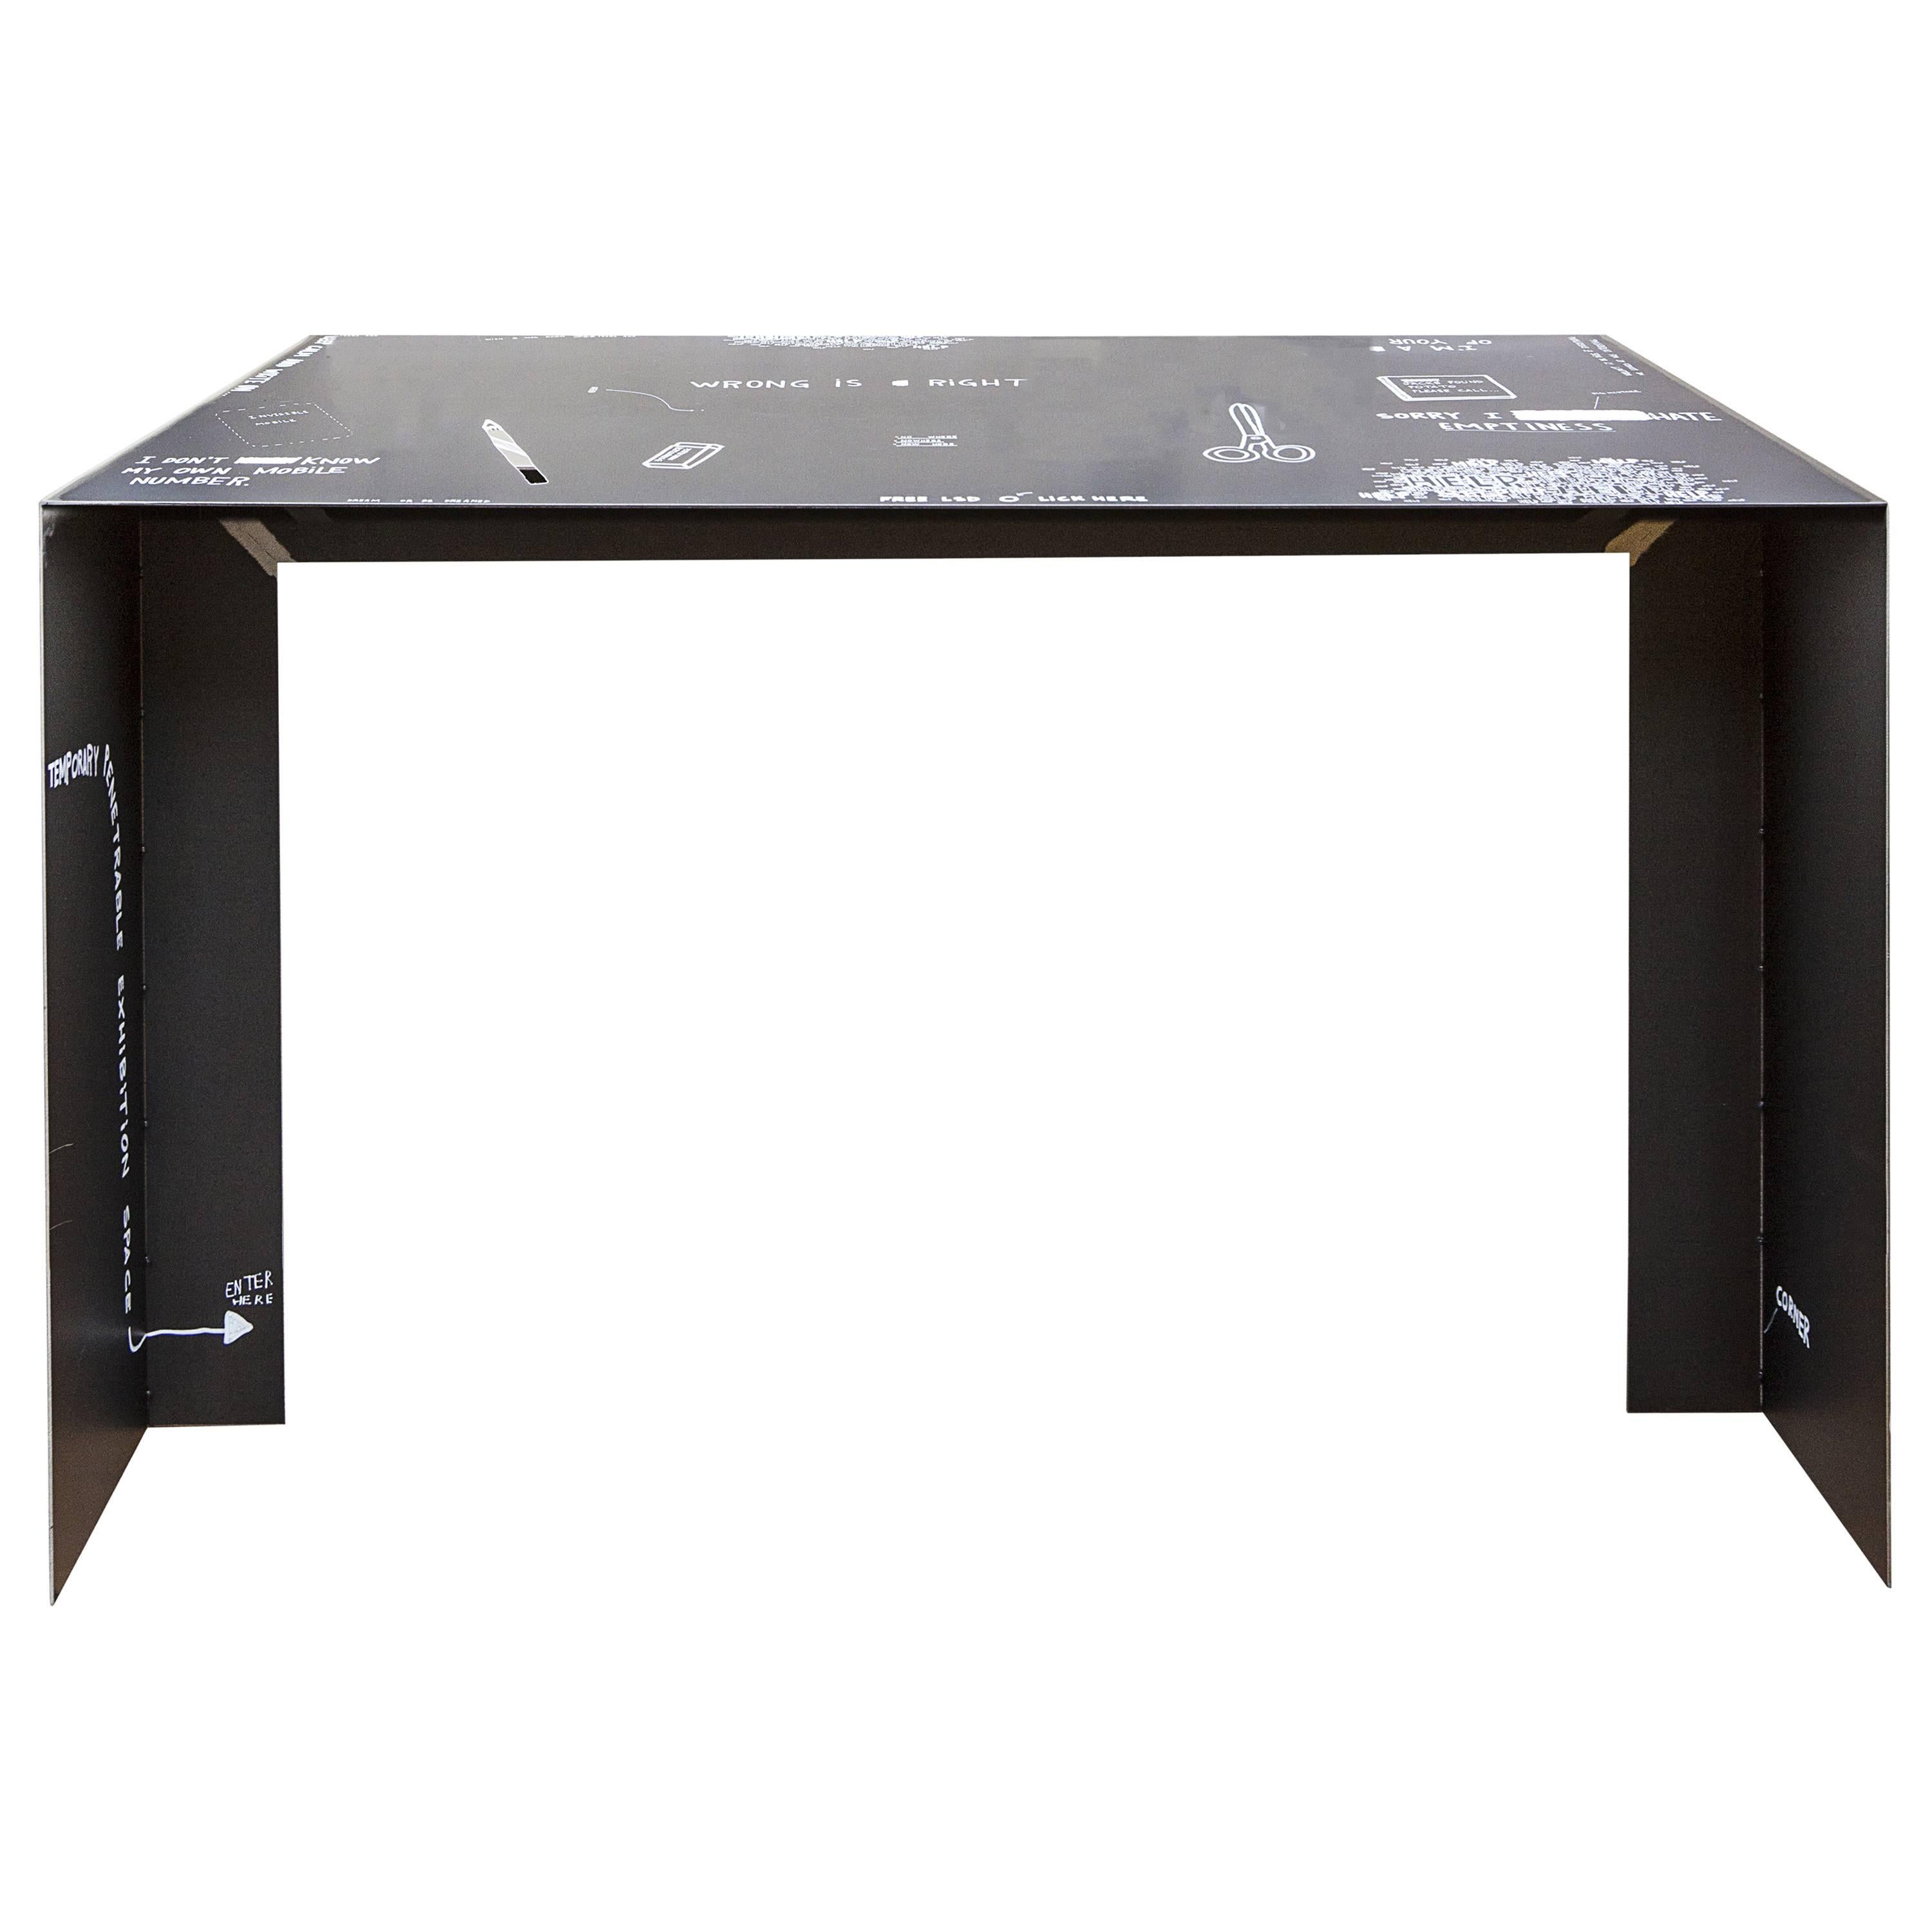 21st Century by Giovanni Casellato & MarCo Raparelli Metal Desk Table Black 